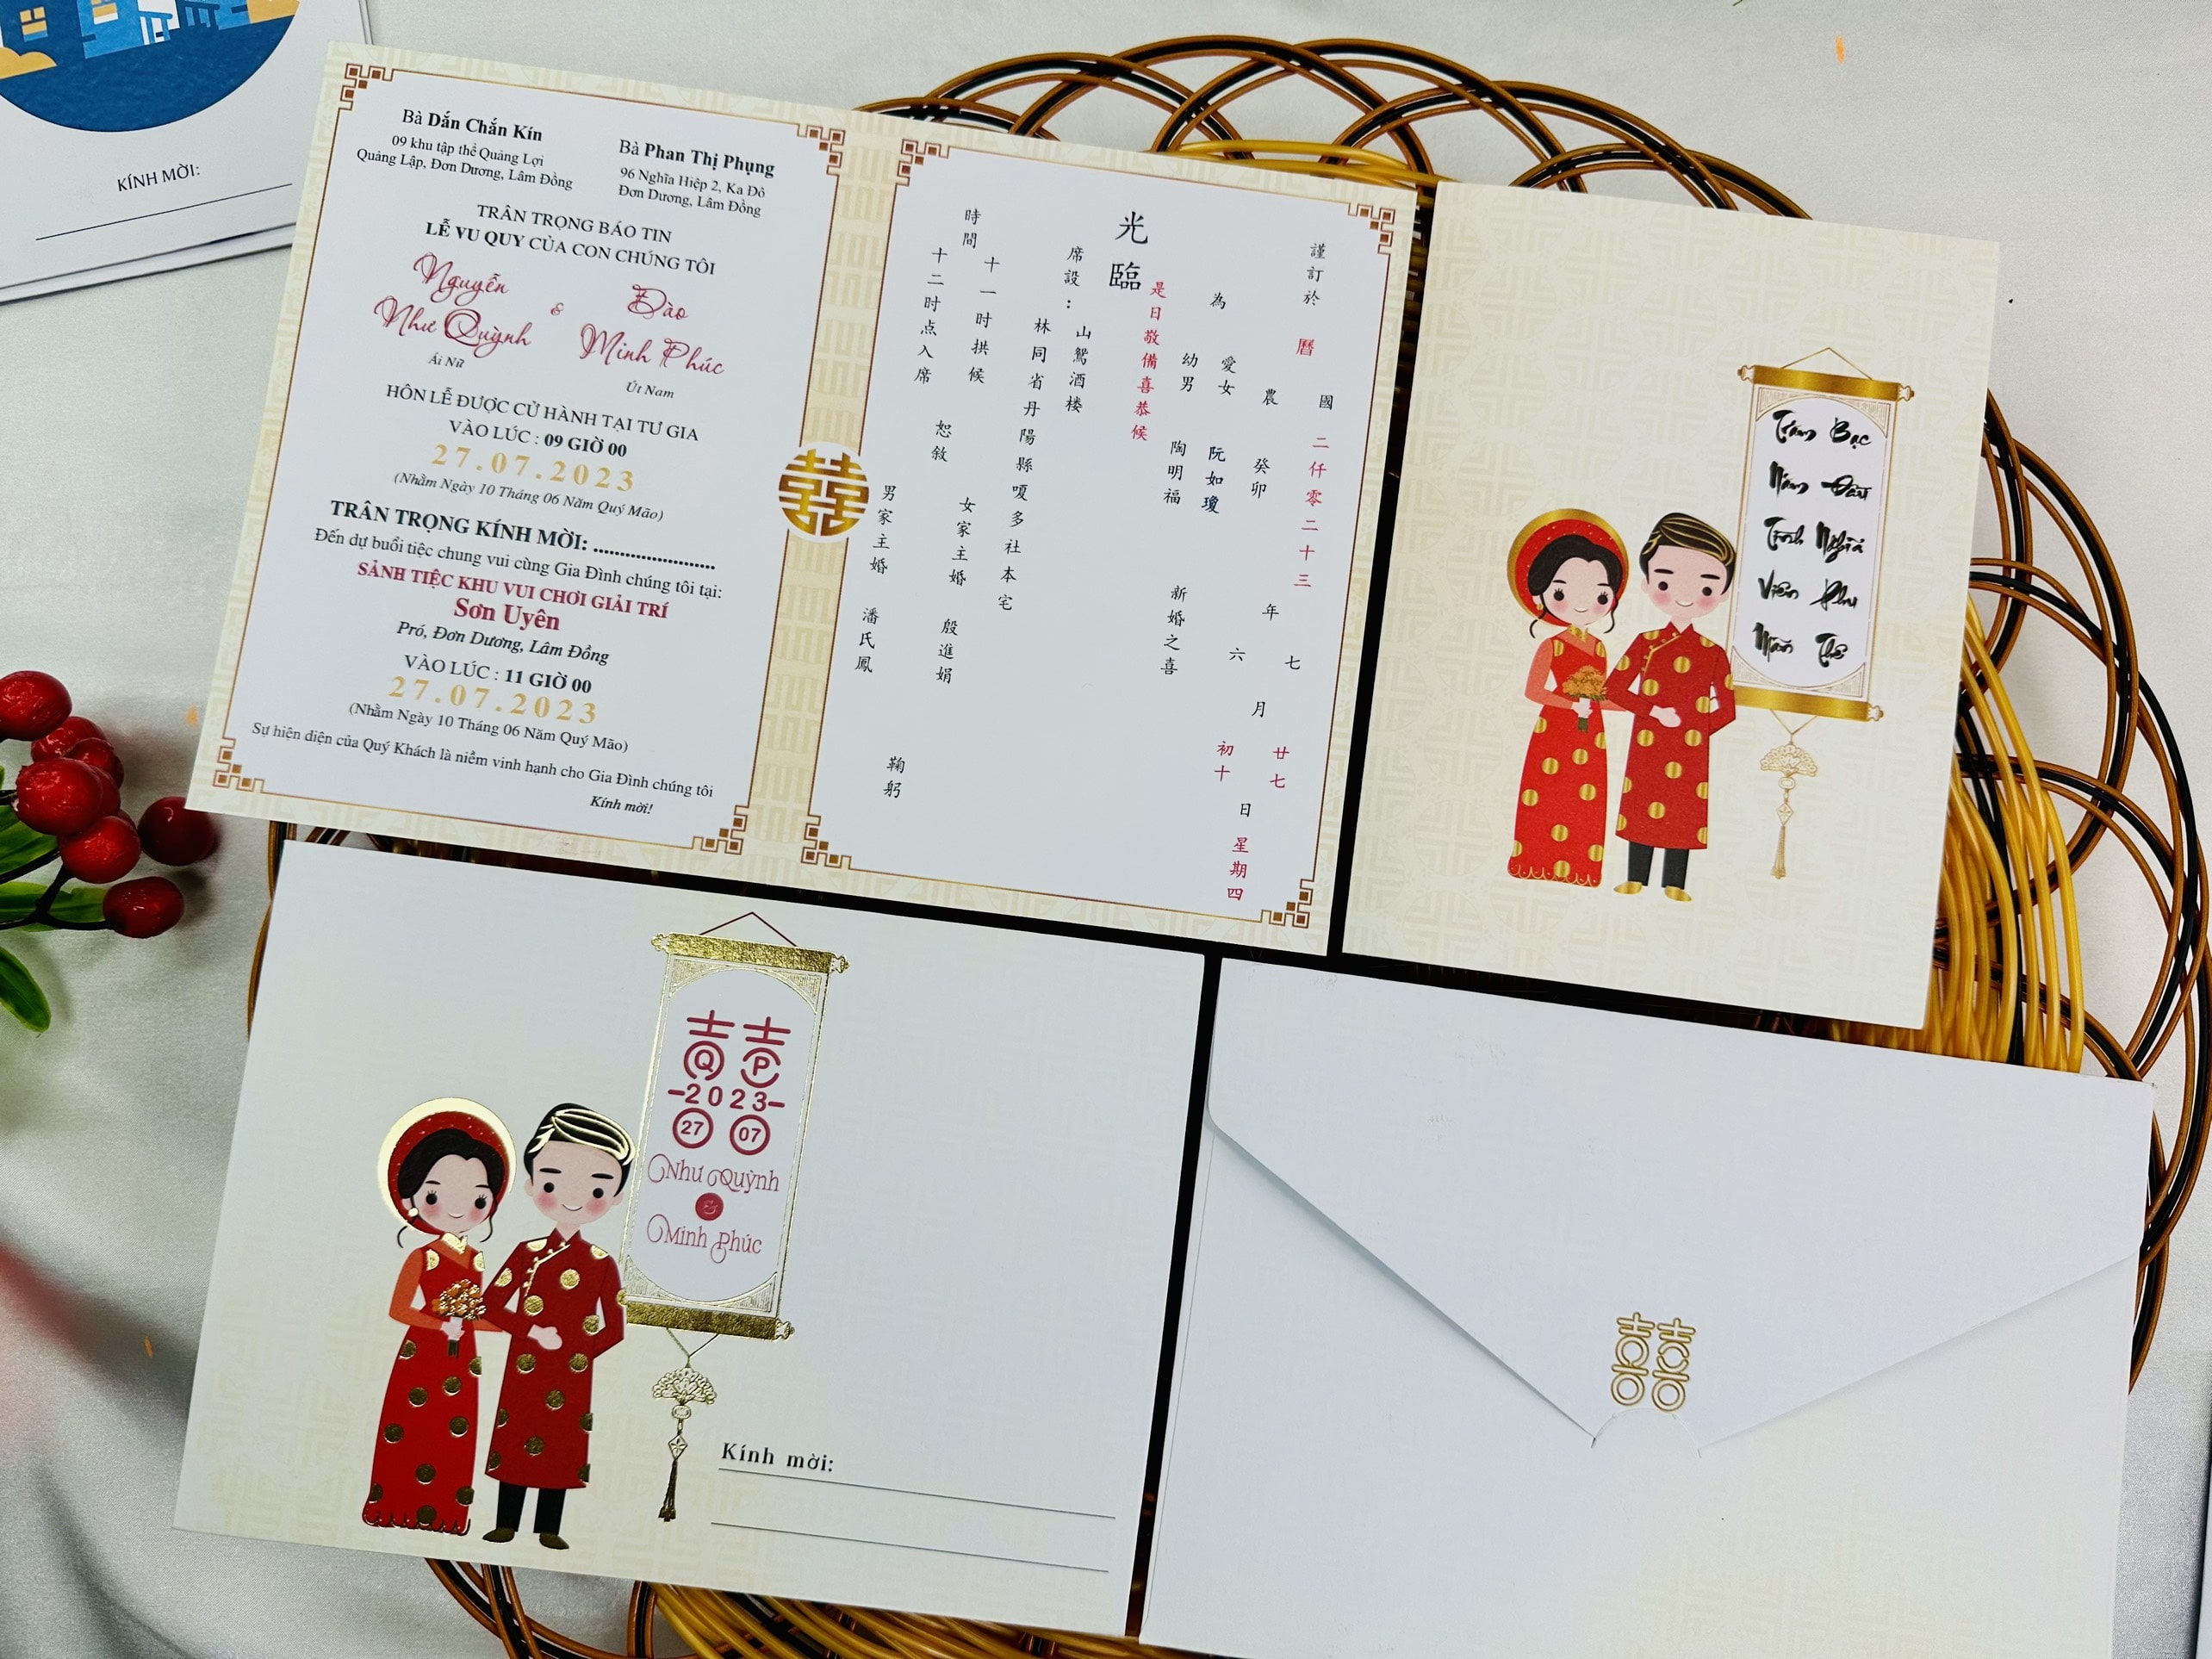 Dịch vụ in thiệp cưới tiếng Hoa là một dịch vụ cung cấp thiệp cưới được in bằng ngôn ngữ tiếng Hoa. Đây là một lựa chọn phổ biến cho cặp đôi có nguồn gốc Trung Quốc hoặc muốn tạo ra một không gian đẹp và truyền thống cho ngày cưới của mình.